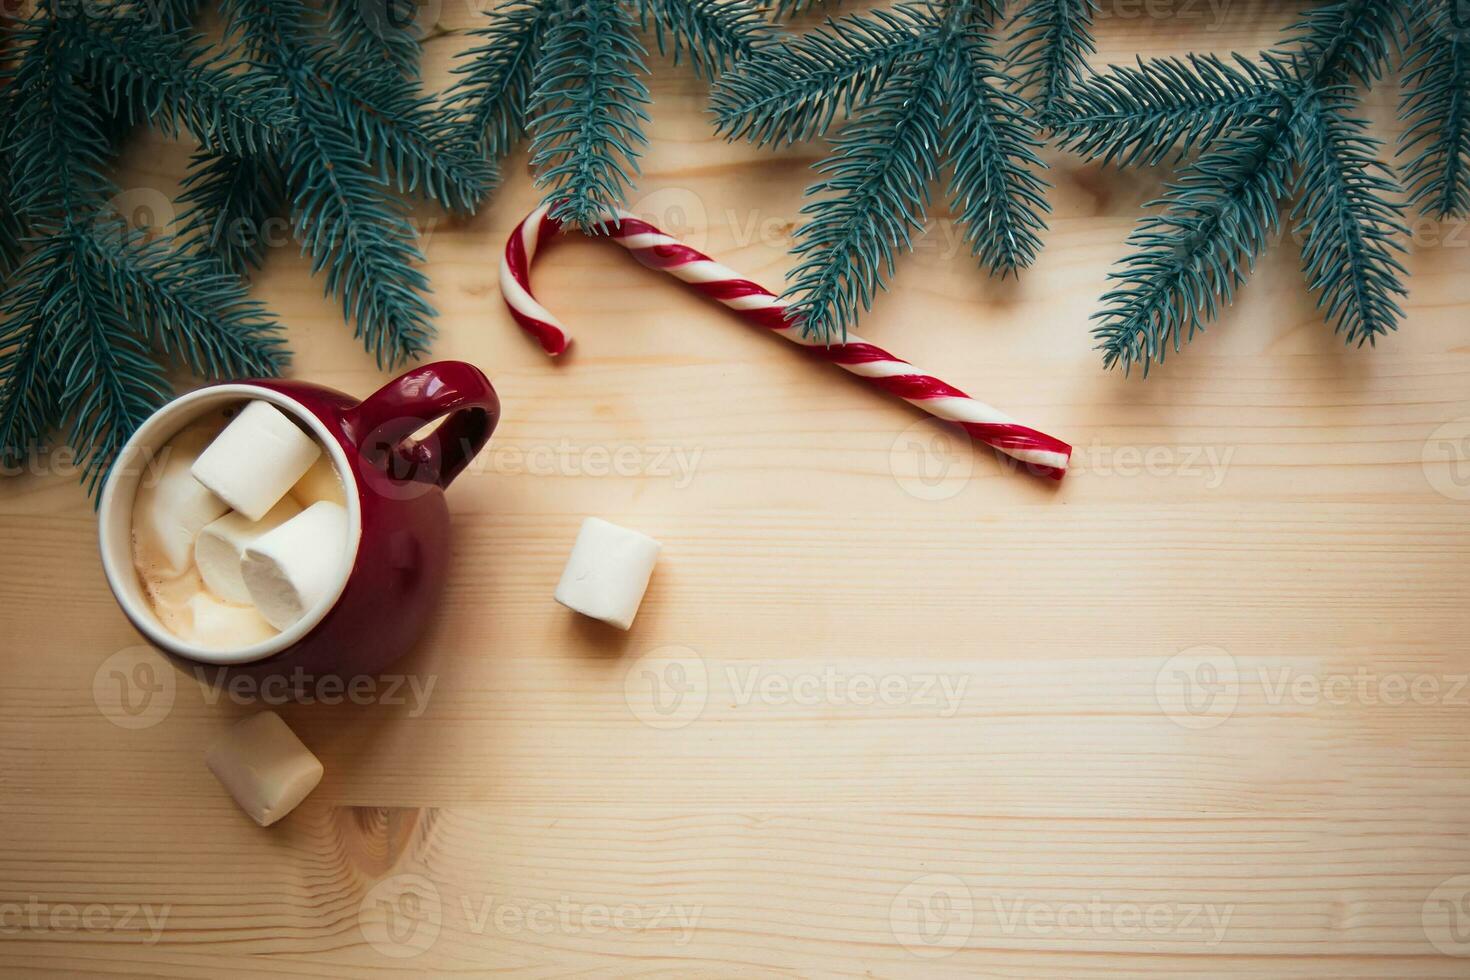 red koppar med varm choklad eller kakao och marshmallow med socker käppar. jul begrepp med gran träd grenar. närbild, selektiv fokus foto